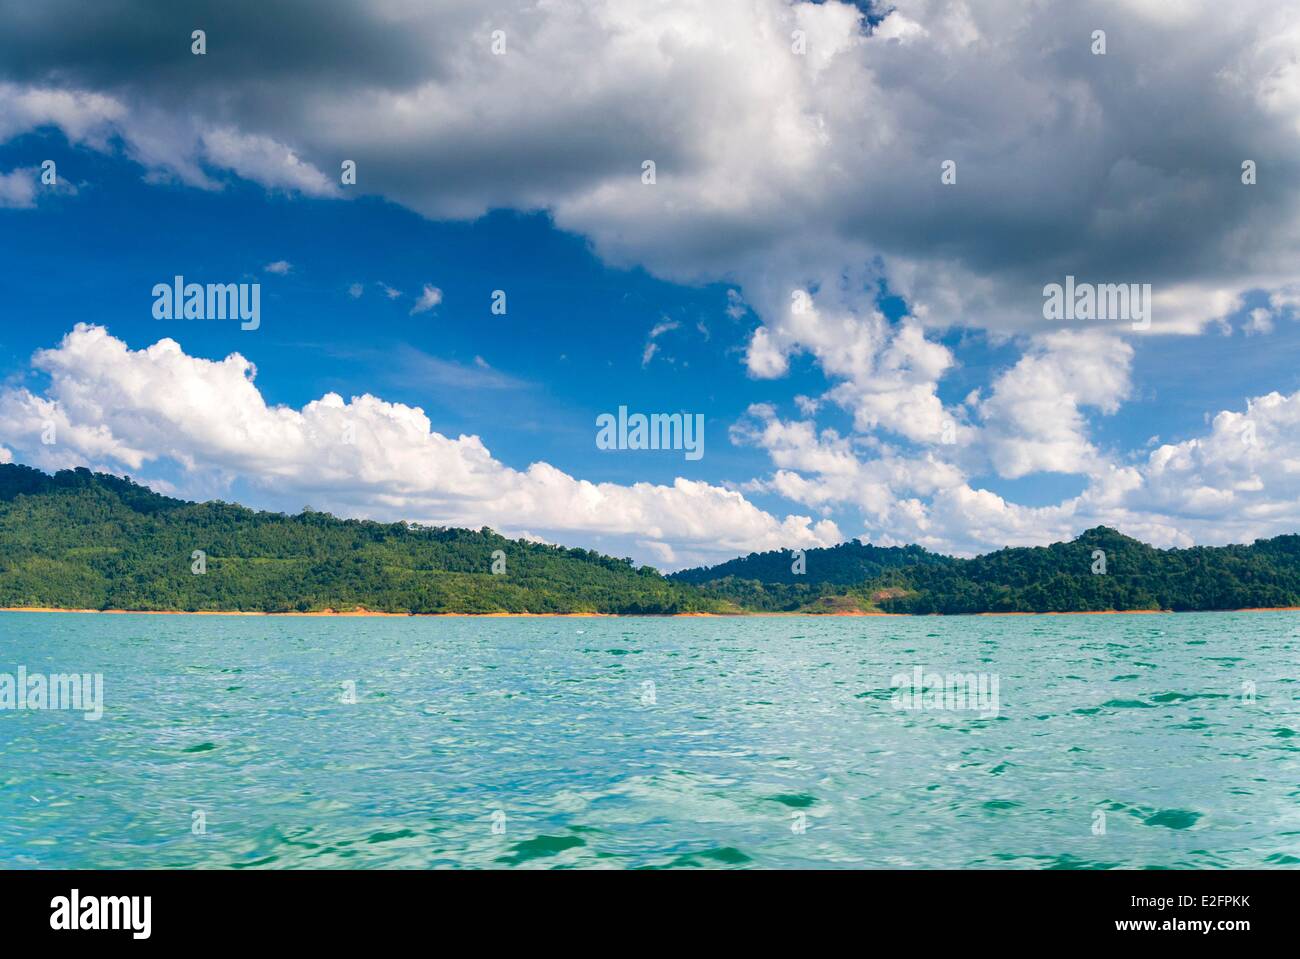 Malaysia Malaysian Borneo Sarawak State Lake Batang Ai Batang Ai National Park Stock Photo